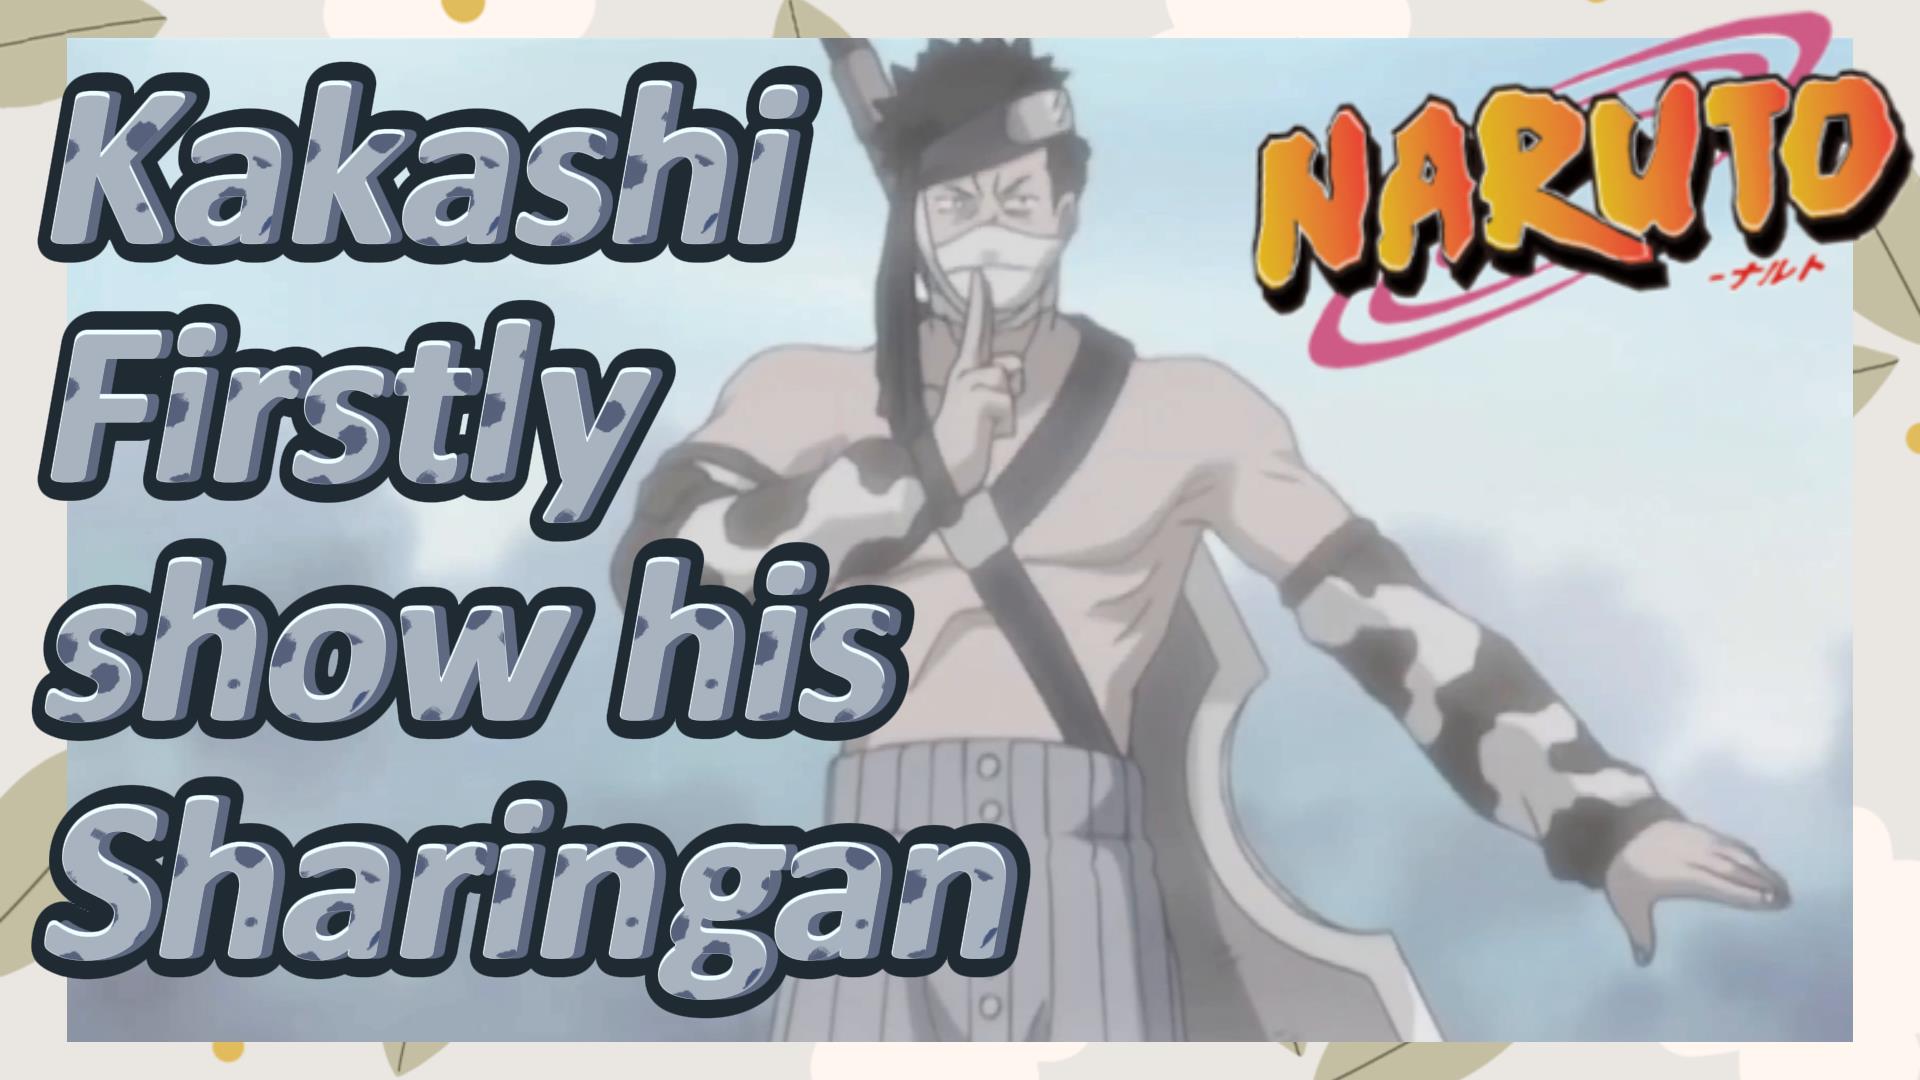 Sharingan là khả năng đột phá của các nhân vật trong bộ truyện Naruto để khiến đối thủ bị lừa, tội đồ bị trừng trị. Xem hình ảnh liên quan để hiểu thêm về sức mạnh của Sharingan.